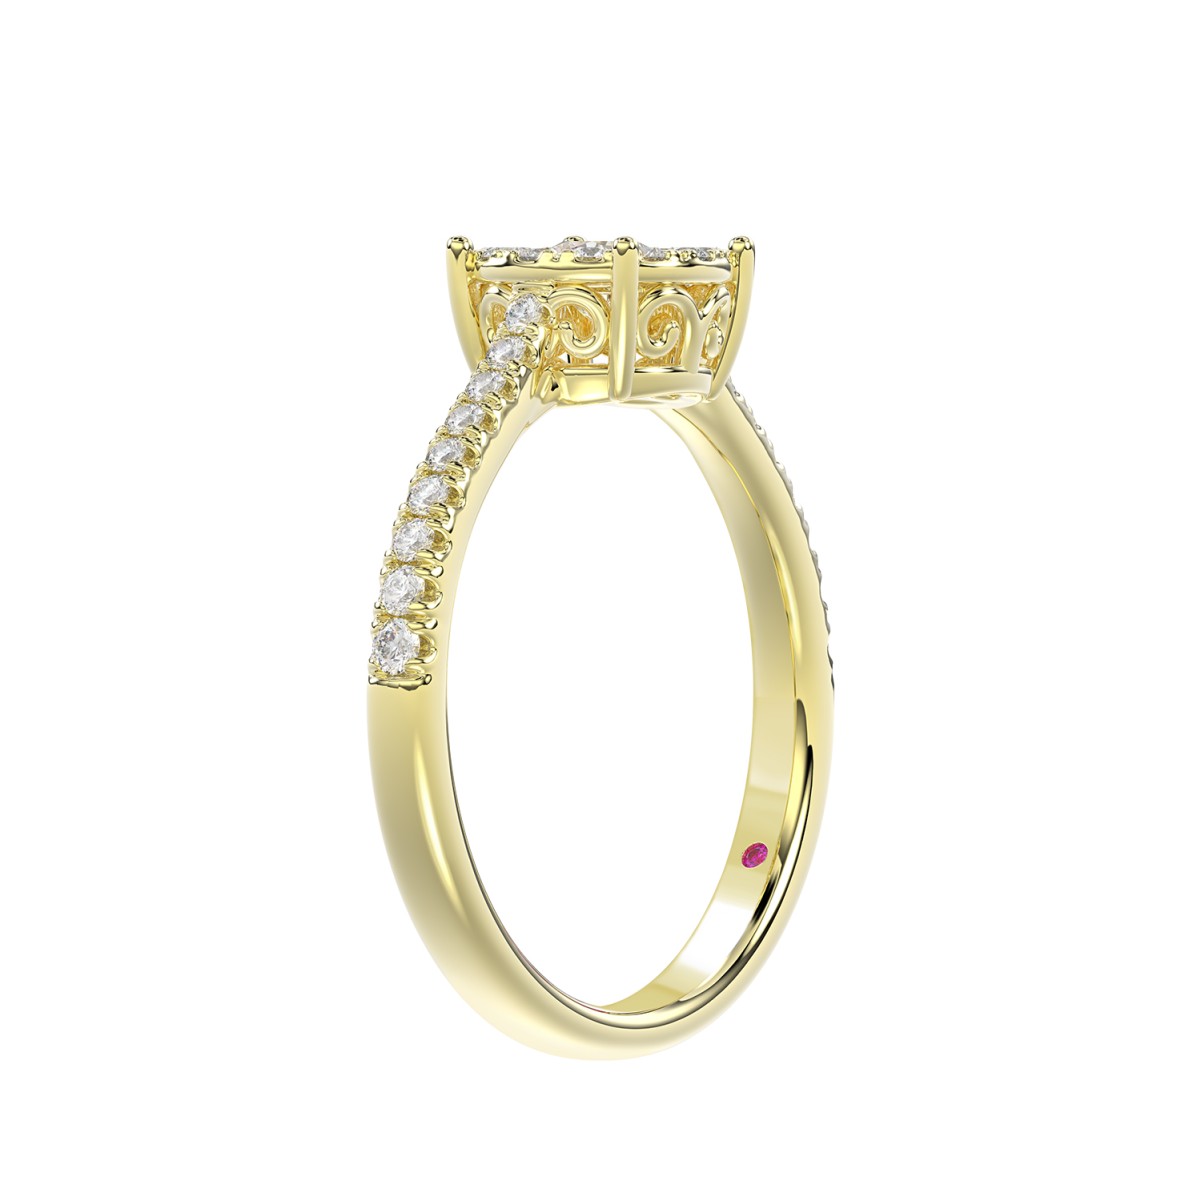 14K YELLOW GOLD 1/2CT ROUND DIAMOND LADIES RING(CENTER STONE ROUND DIAMOND 1/4CT)